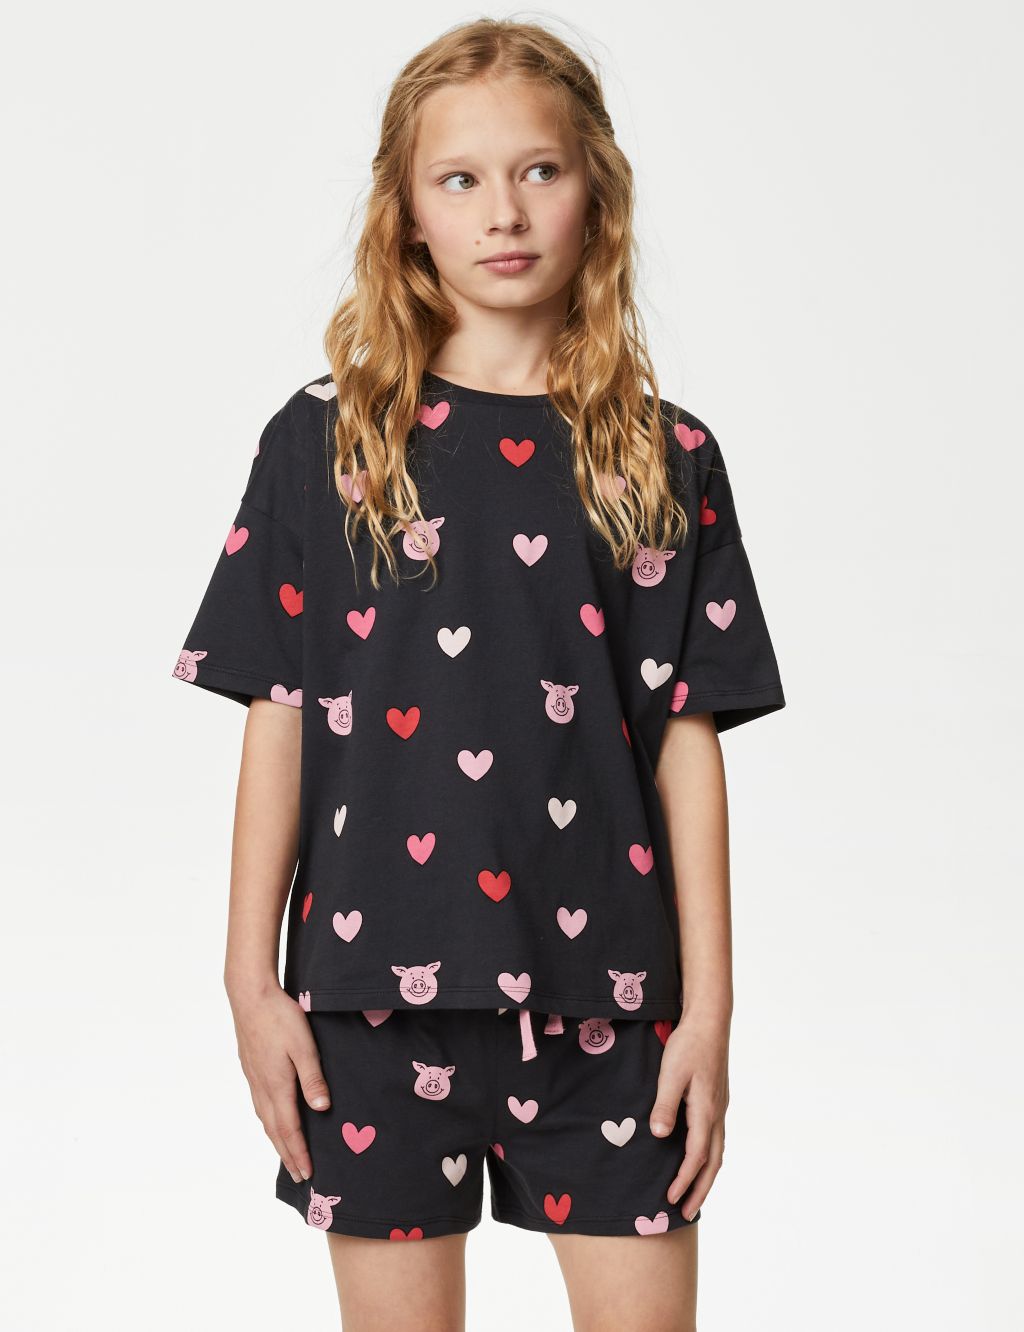 Percy Pig™ Heart Pyjamas (2-16 Yrs) image 1